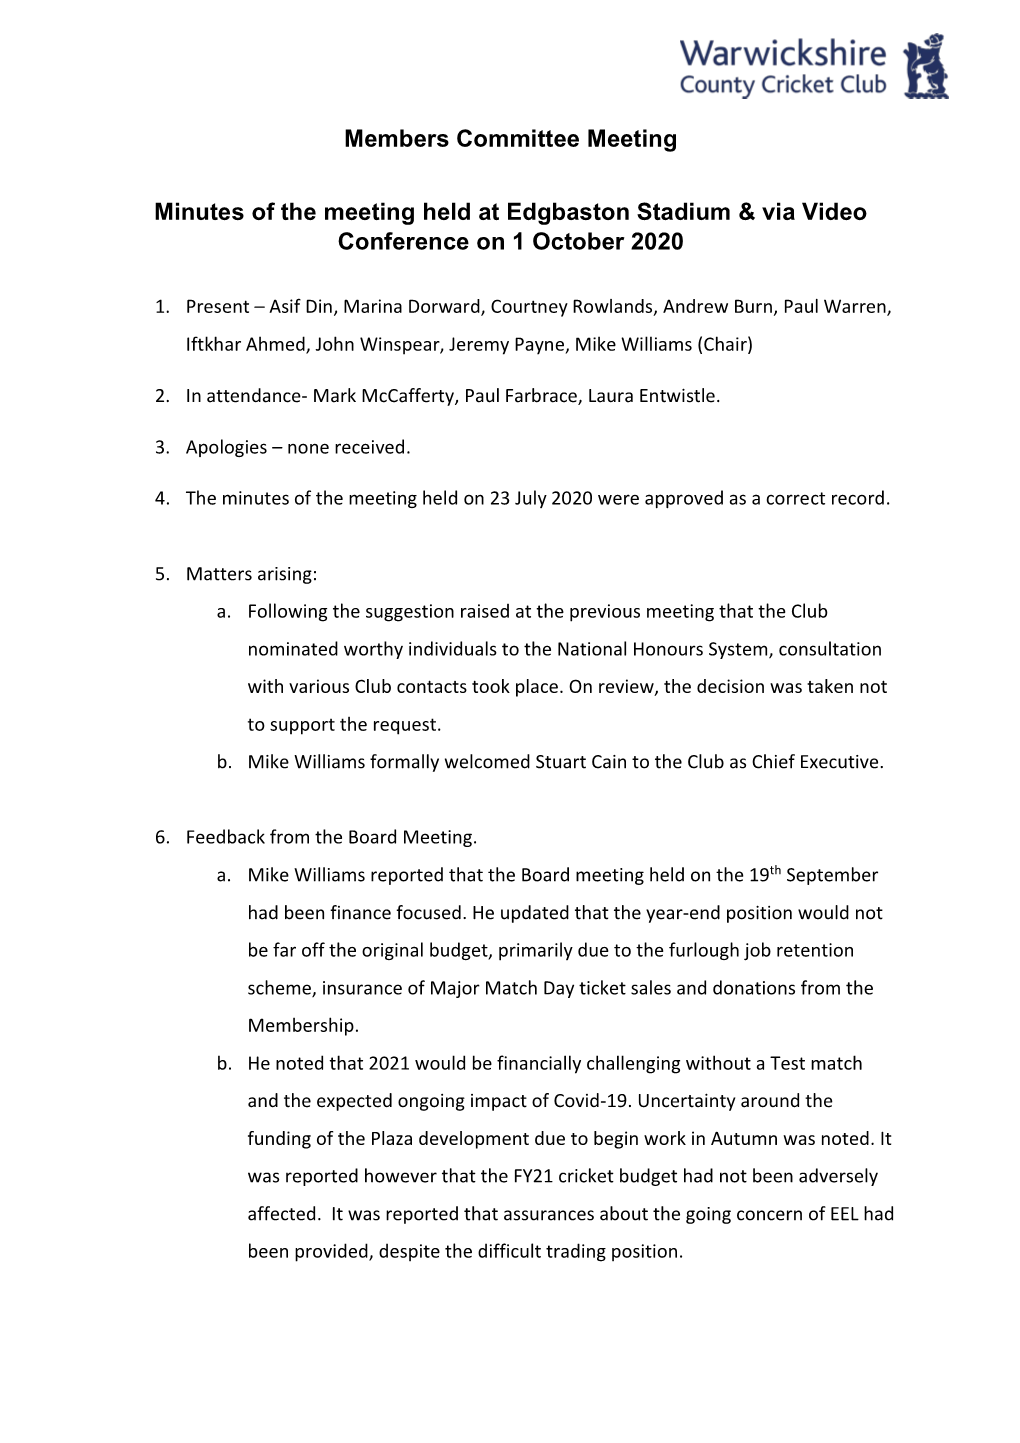 Members Committee Meeting Minutes of the Meeting Held at Edgbaston